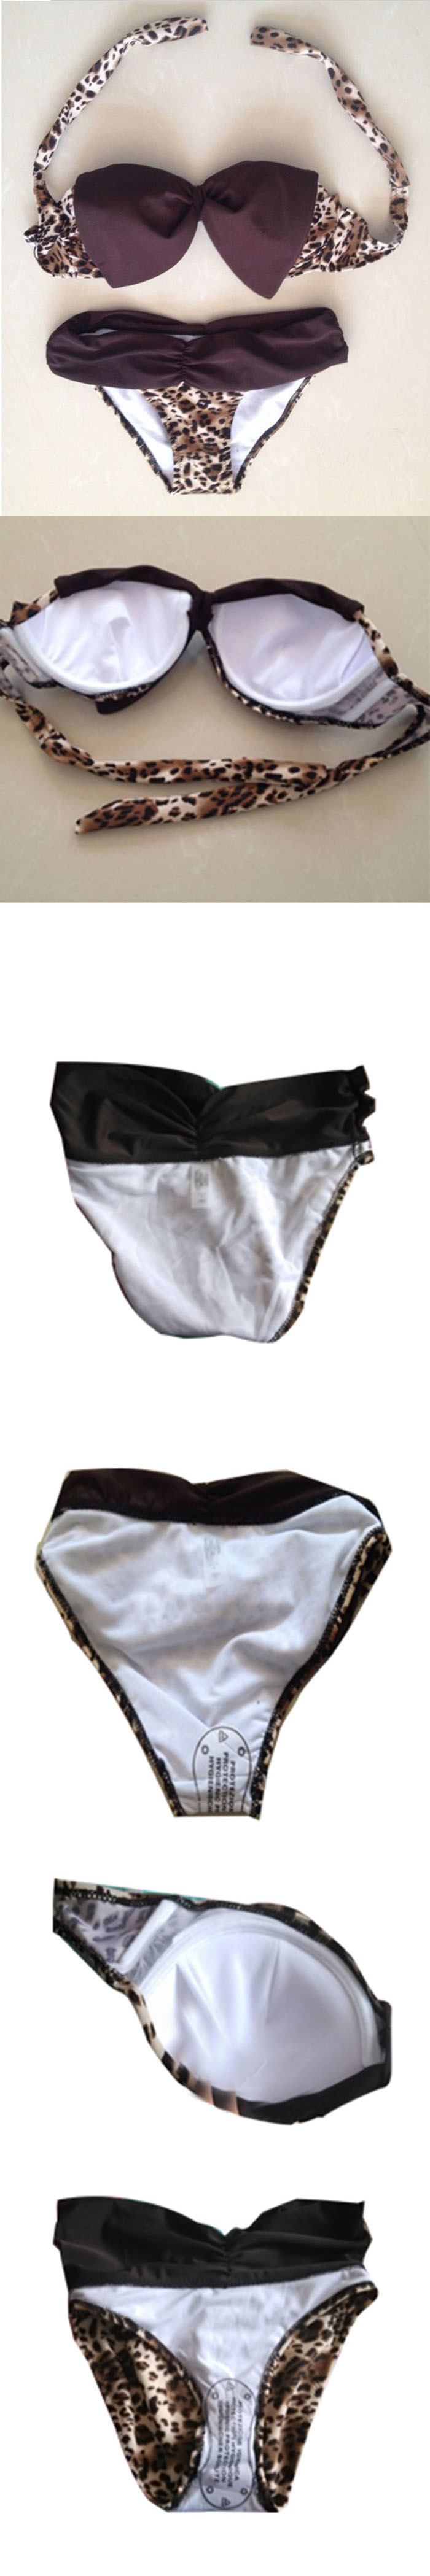 2015 Free Shipping Zebra Leopard Swimwear Women Padded Boho Fringe Bandeau Bikini Set New Swimsuit Lady Bathing suit (8)